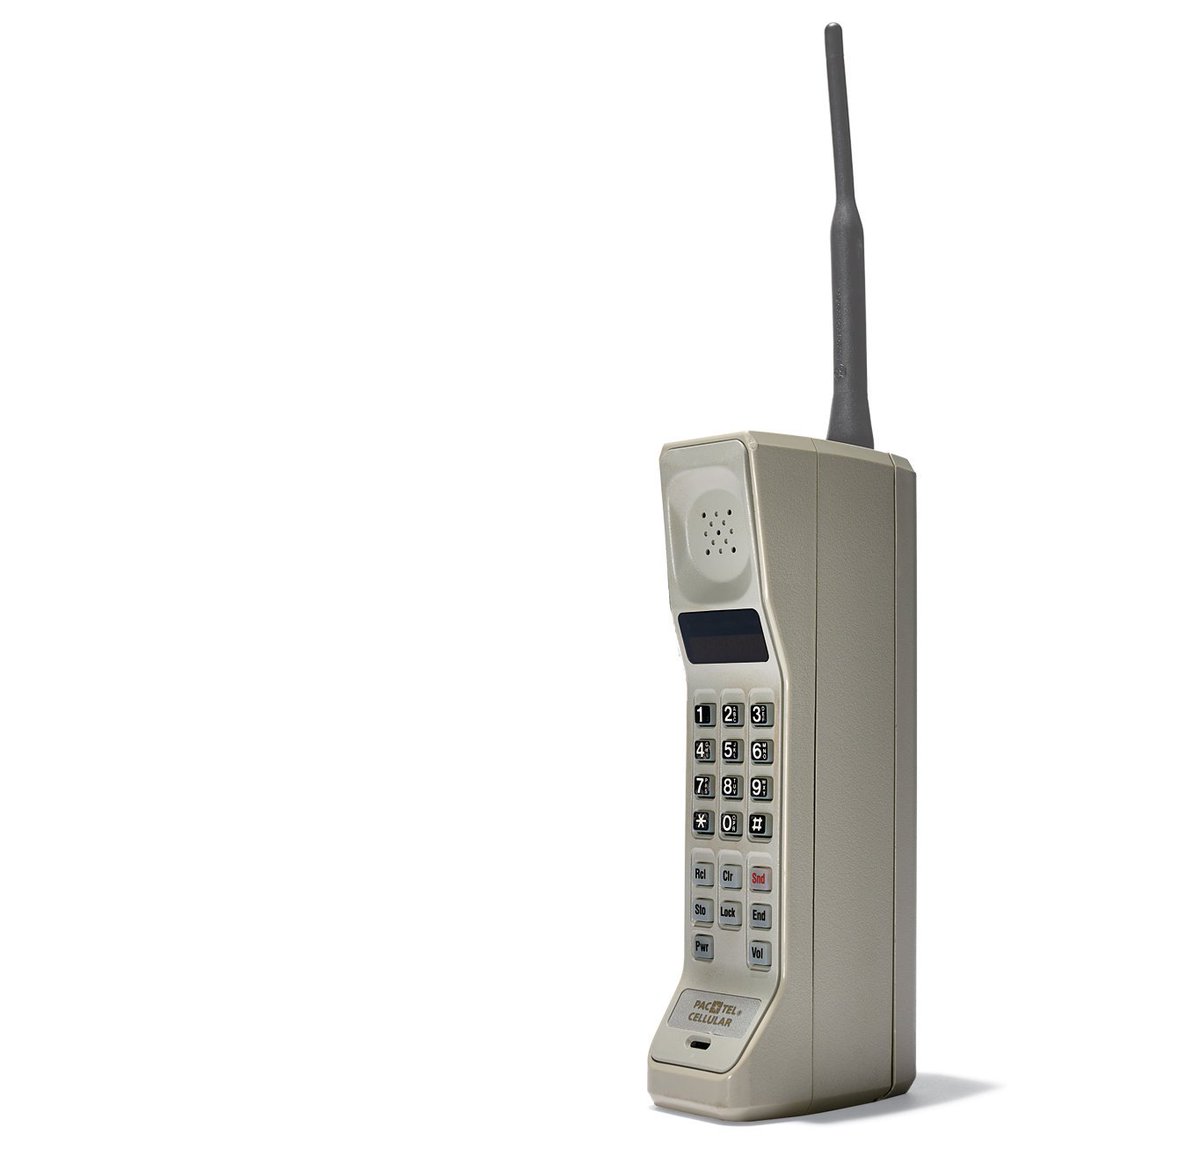 Le premier téléphone portable de l'histoire, le Motorola Dyna-Tac 8000X -  Le téléphone mobile a 40 ans, non mais allô